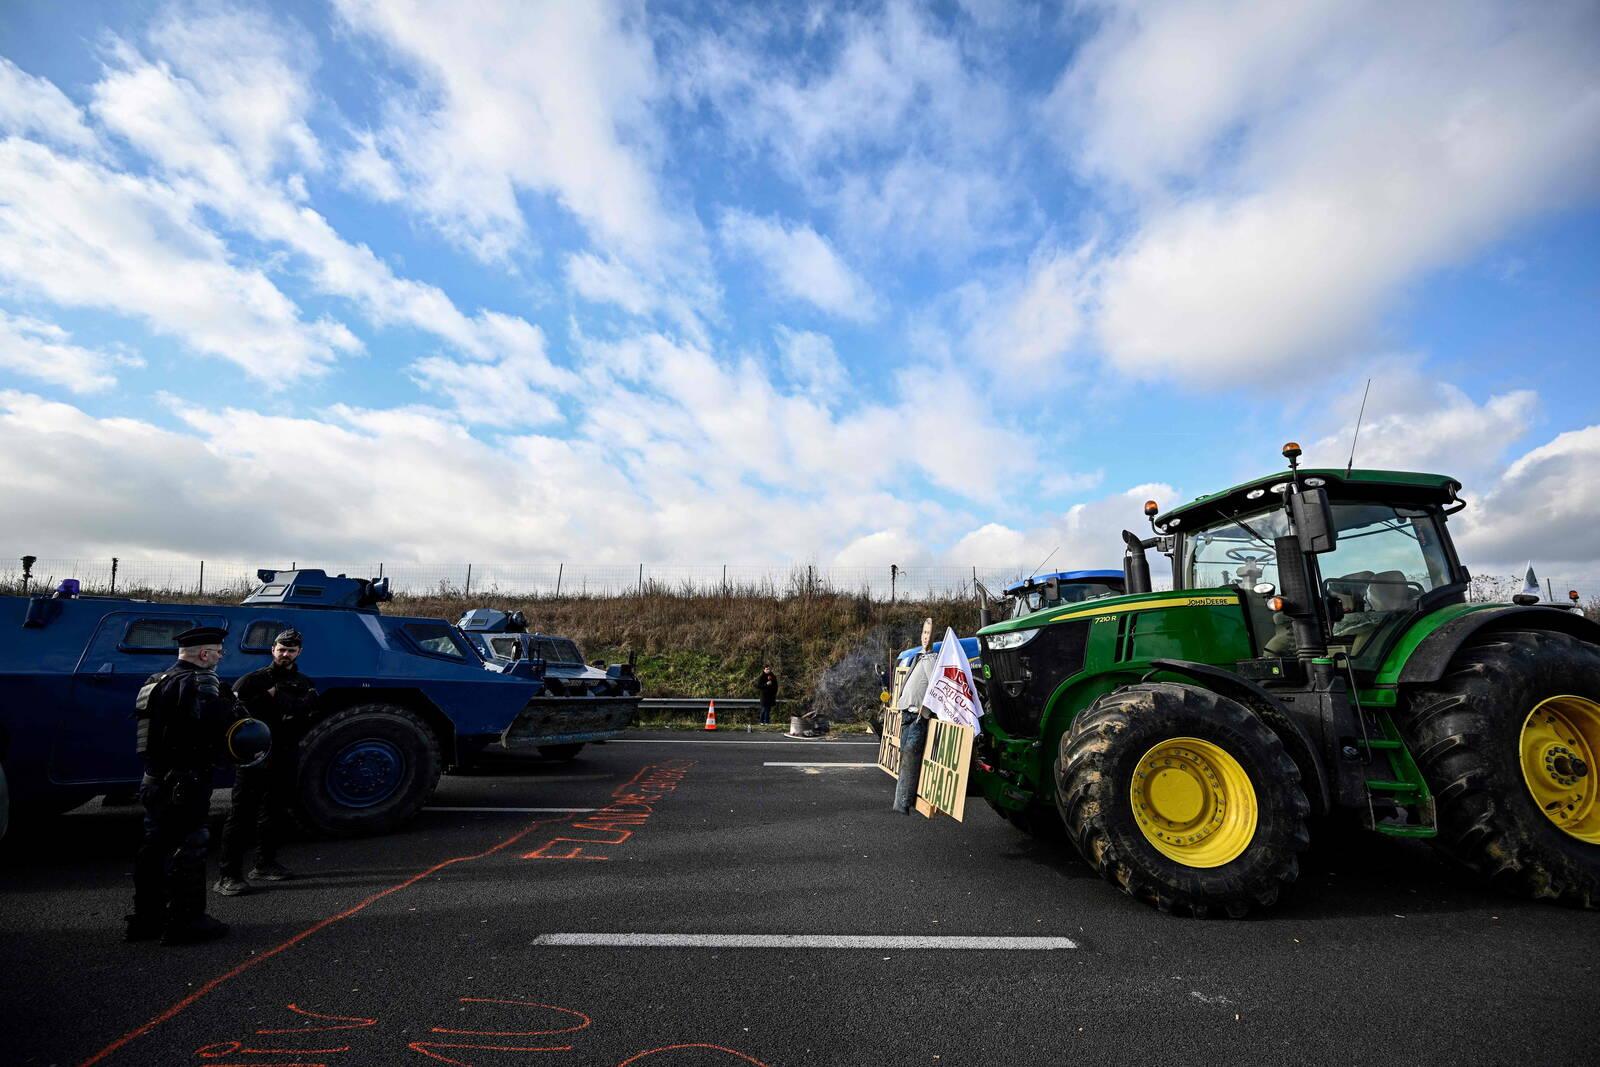 Des tracteurs affrontent des véhicules blindés de gendarmerie Berliet VXB-170 ou VBRG (Véhicule Blindé à Roues de la Gendarmerie) sur l'autoroute A1 près de Chennevières-les-Louvres, à proximité de l'aéroport Roissy-Charles-de-Gaulle, au nord-ouest de Paris, le 31 janvier 2024, alors que les agriculteurs français maintiennent des barrages routiers sur les principales autoroutes menant à Paris pour un troisième jour, dans le cadre de manifestations à l'échelle nationale convoquées par plusieurs syndicats d'agriculteurs contre le dumping étranger, les impôts et la réglementation. Des convois de tracteurs se sont rapprochés de Paris, Lyon et d'autres endroits stratégiques en France le 31 janvier, alors que des milliers d'agriculteurs protestataires semblaient ignorer les avertissements d'intervention de la police s'ils franchissaient les lignes rouges fixées par les ministres. Les syndicats d'agriculteurs, peu impressionnés par les concessions proposées par le gouvernement présidentiel, ont encouragé leurs membres à poursuivre leur lutte pour des revenus plus élevés, moins de bureaucratie et une protection contre la concurrence étrangère. (Photo de JULIEN DE ROSA / AFP)